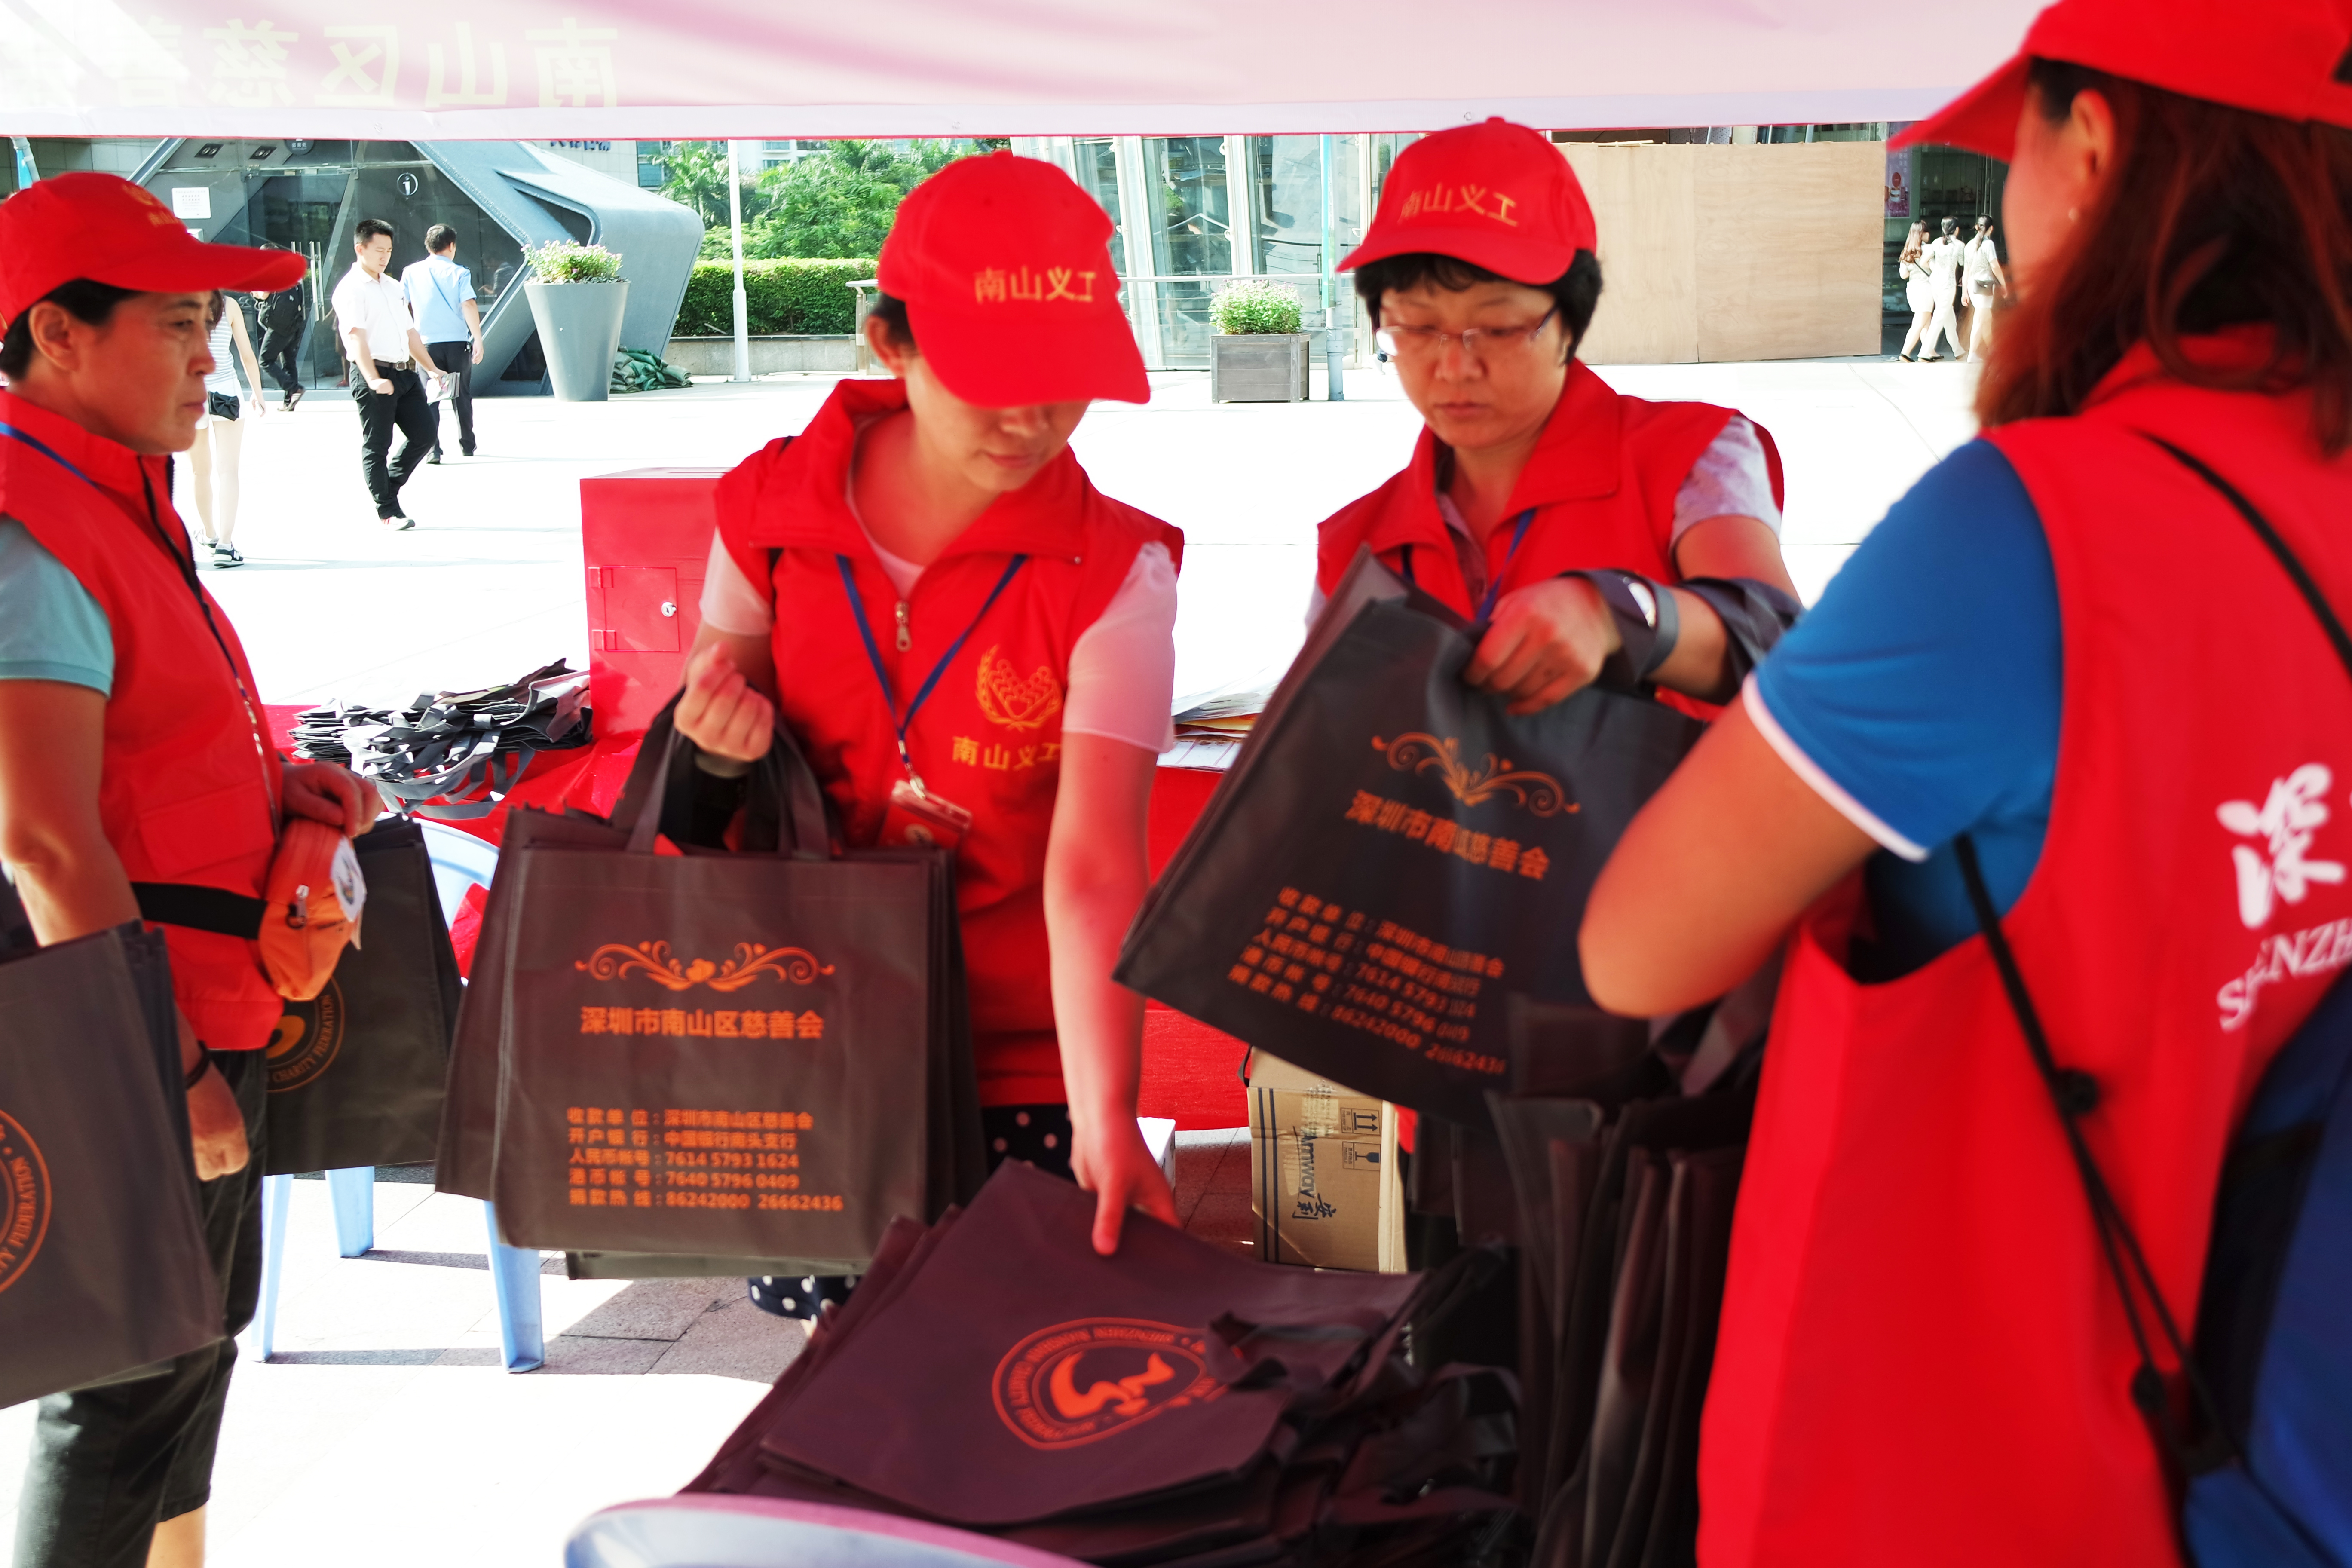 慈善月组织义工向市民派发慈善环保购物袋